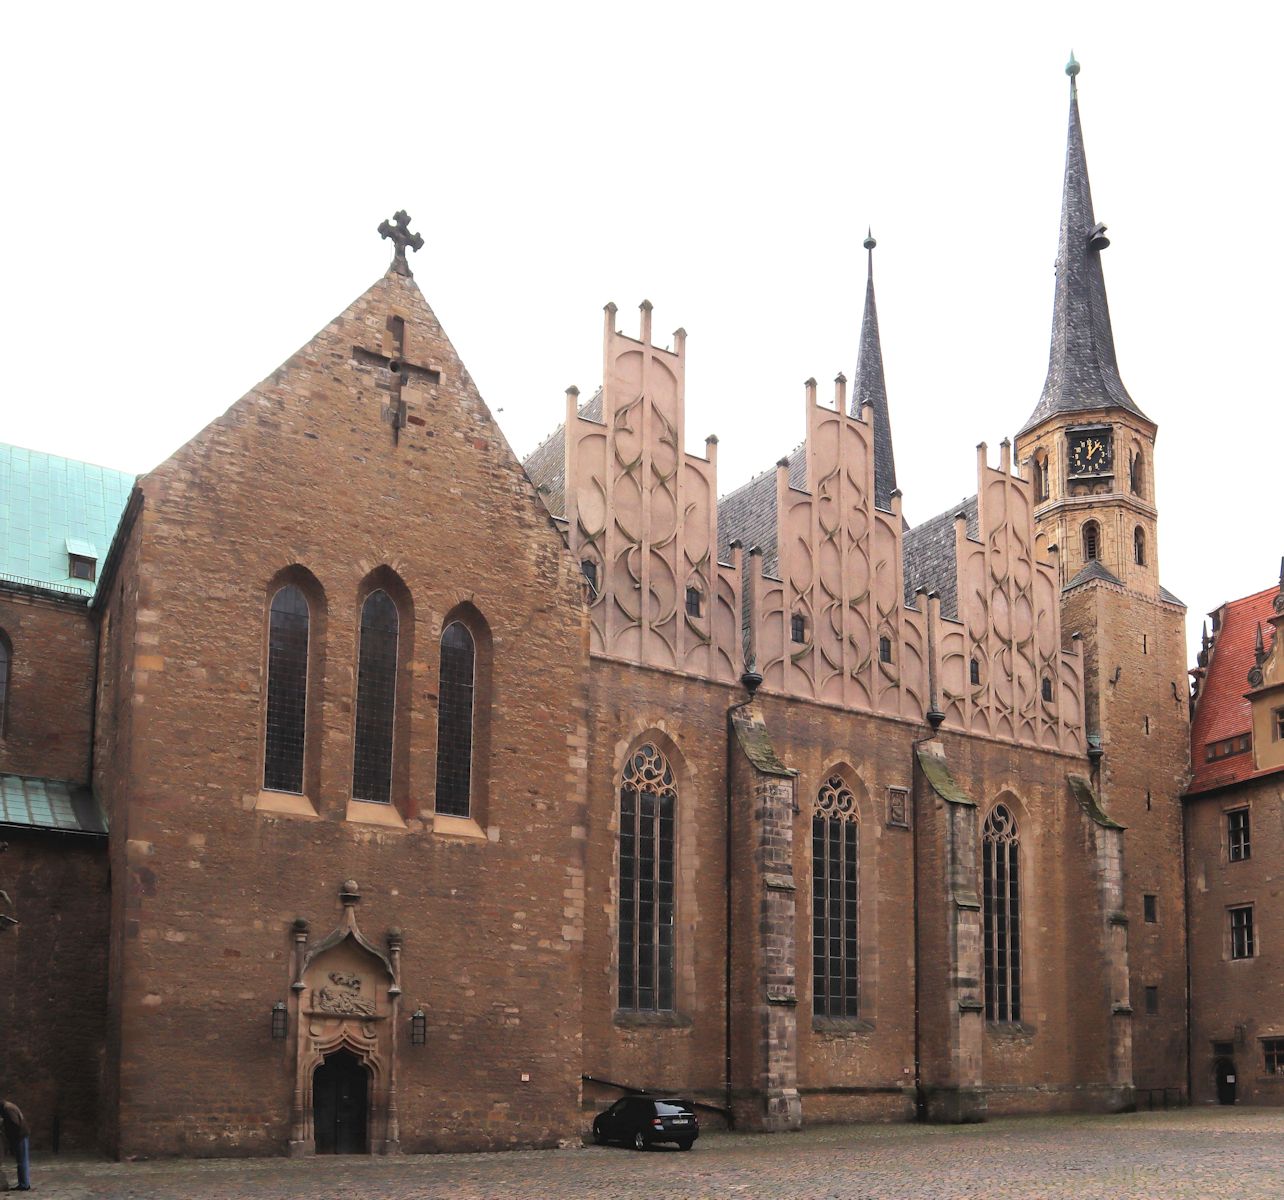 Dom in Merseburg, erbaut ab 1015 an der Stelle der älteren Kirche, die Johannes dem Täufer geweiht und Teil der Königspfalz - des heutigen Schlosses - war.